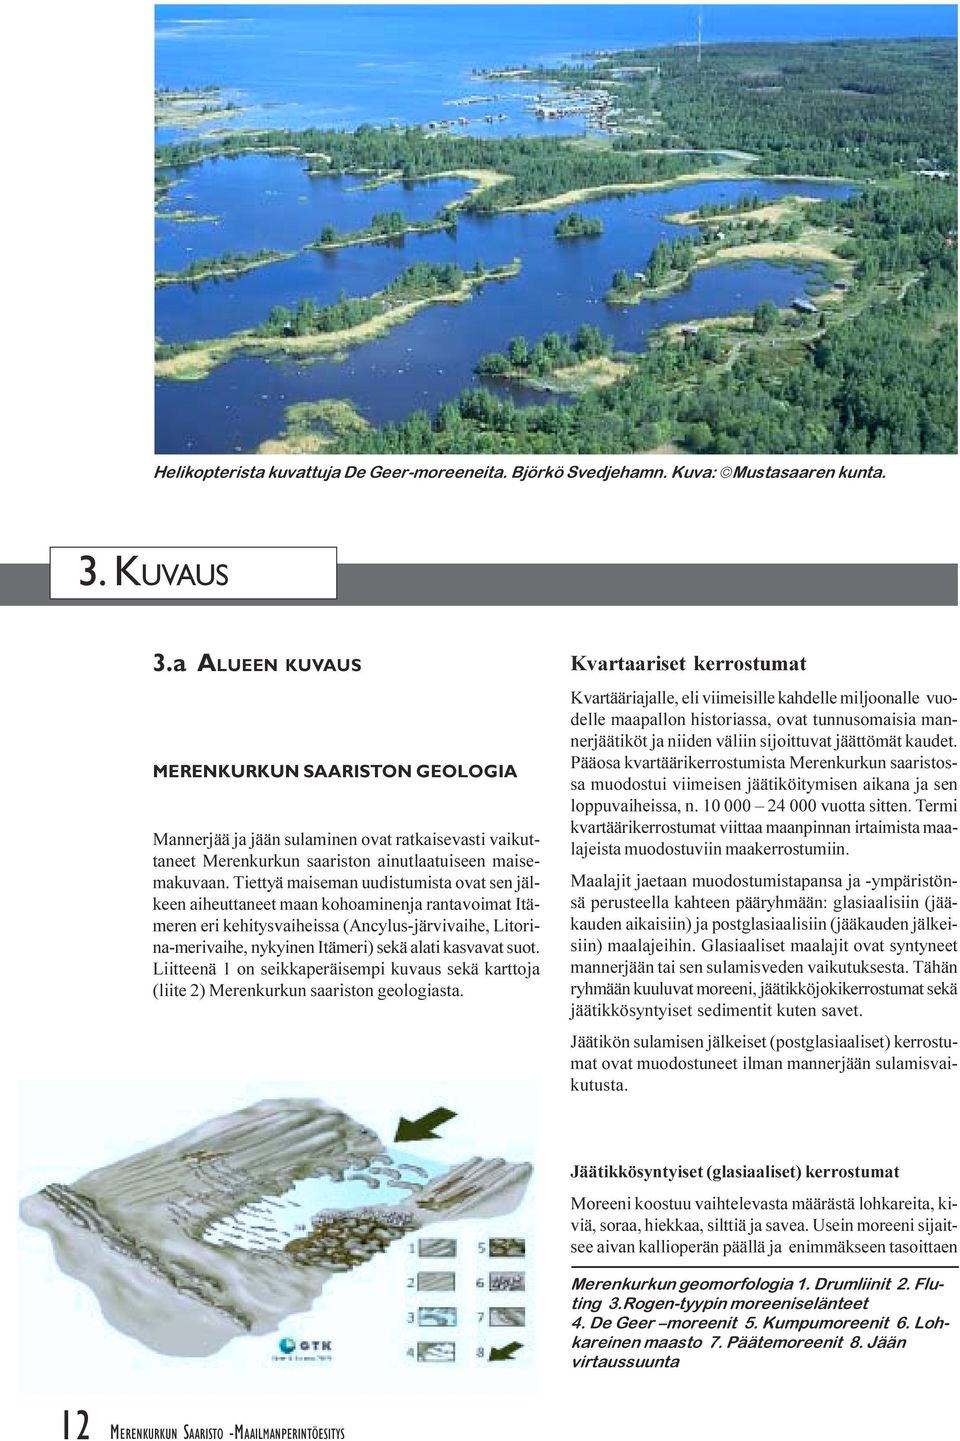 (Ancylus-järvivaihe, Litorina-merivaihe, nykyinen Itämeri) sekä alati kasvavat suot Liitteenä 1 on seikkaperäisempi kuvaus sekä karttoja (liite 2) Merenkurkun saariston geologiasta Kvartaariset